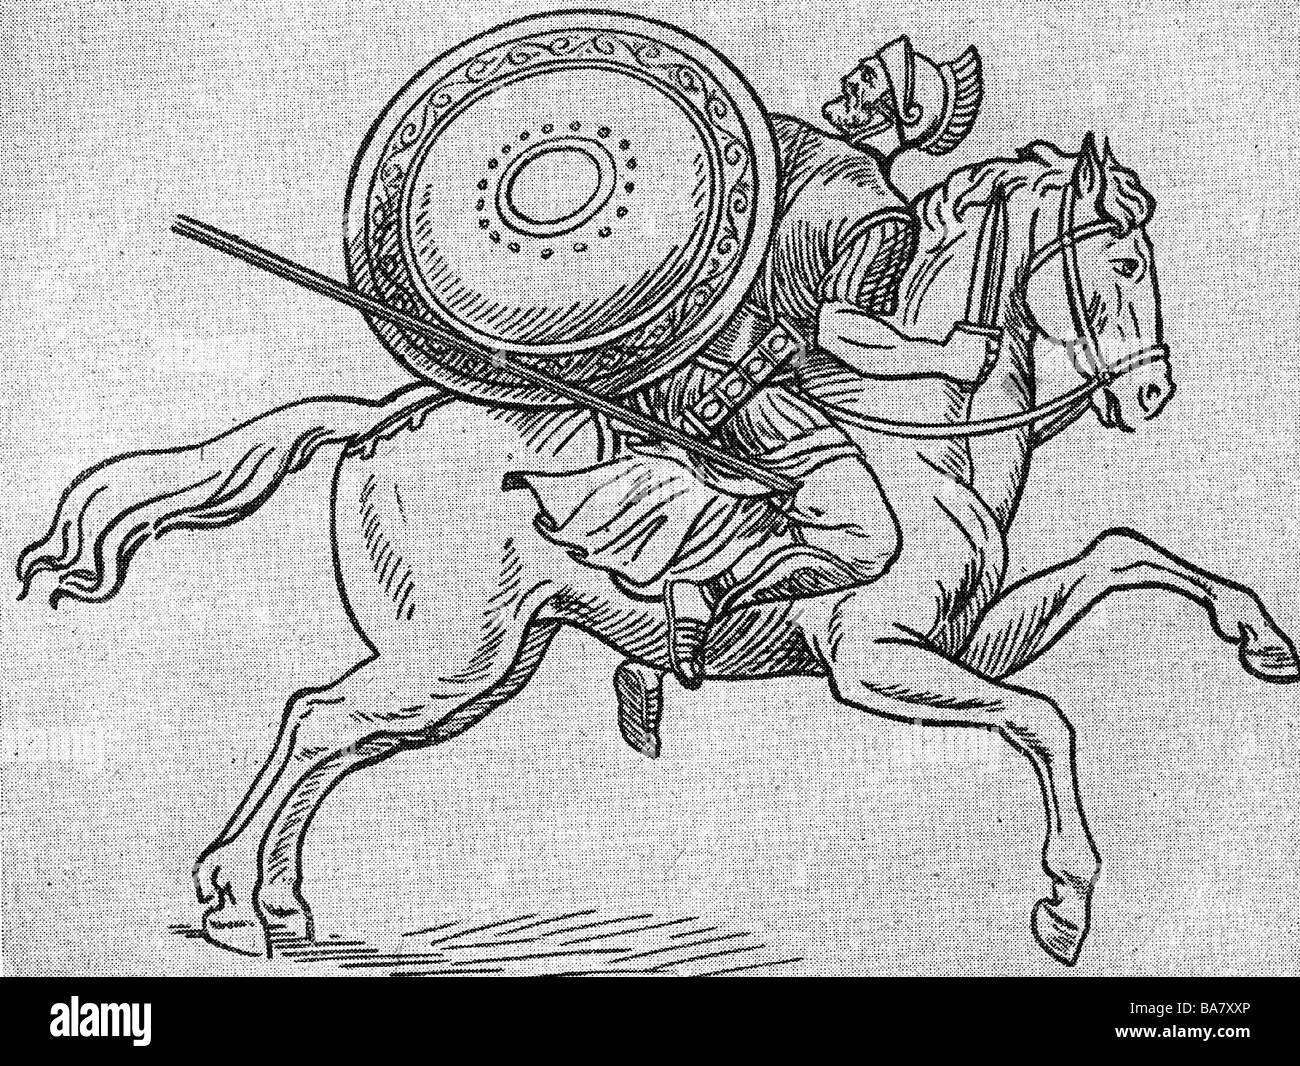 Spartacus, ca. 109 - 71 v. Chr., thrakischer Gladiator, der die Slave-Revolte gegen Rom 73 - 71 v. Chr. anführte, wird am Bein verletzt, Holzgravur nach Fresko, 19. Jahrhundert, Stockfoto